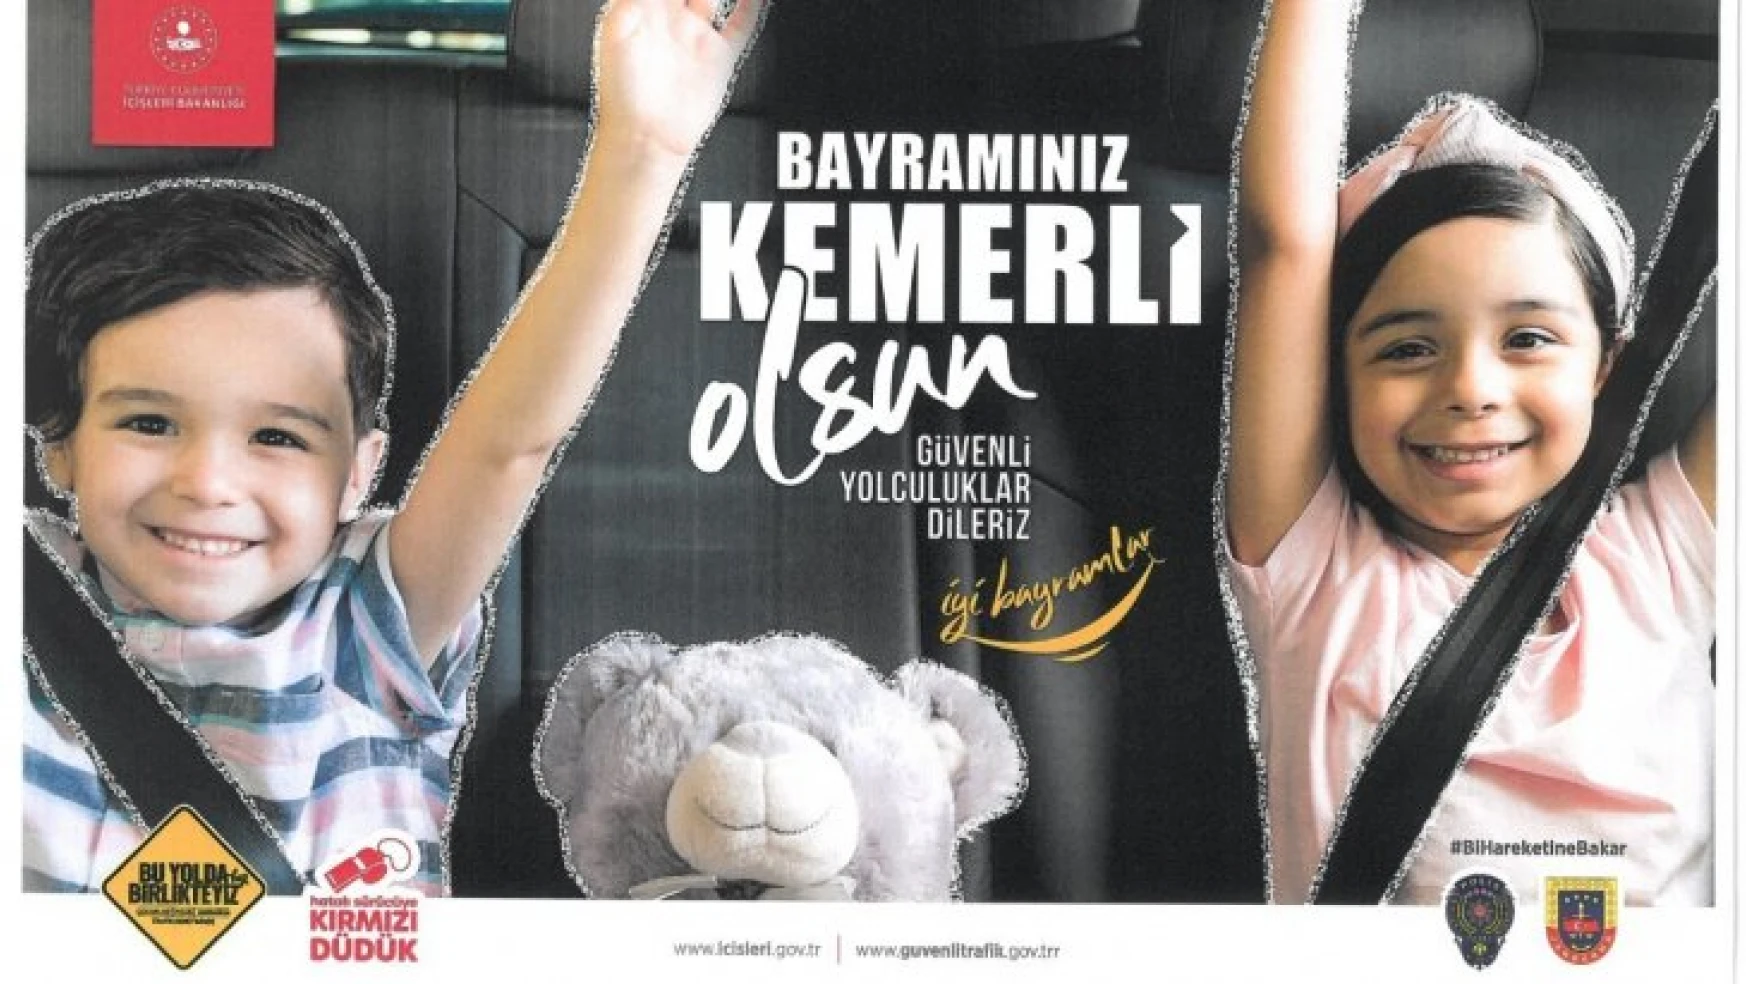 'Bayramınız Kemerli Olsun' sloganı ile kazalara set